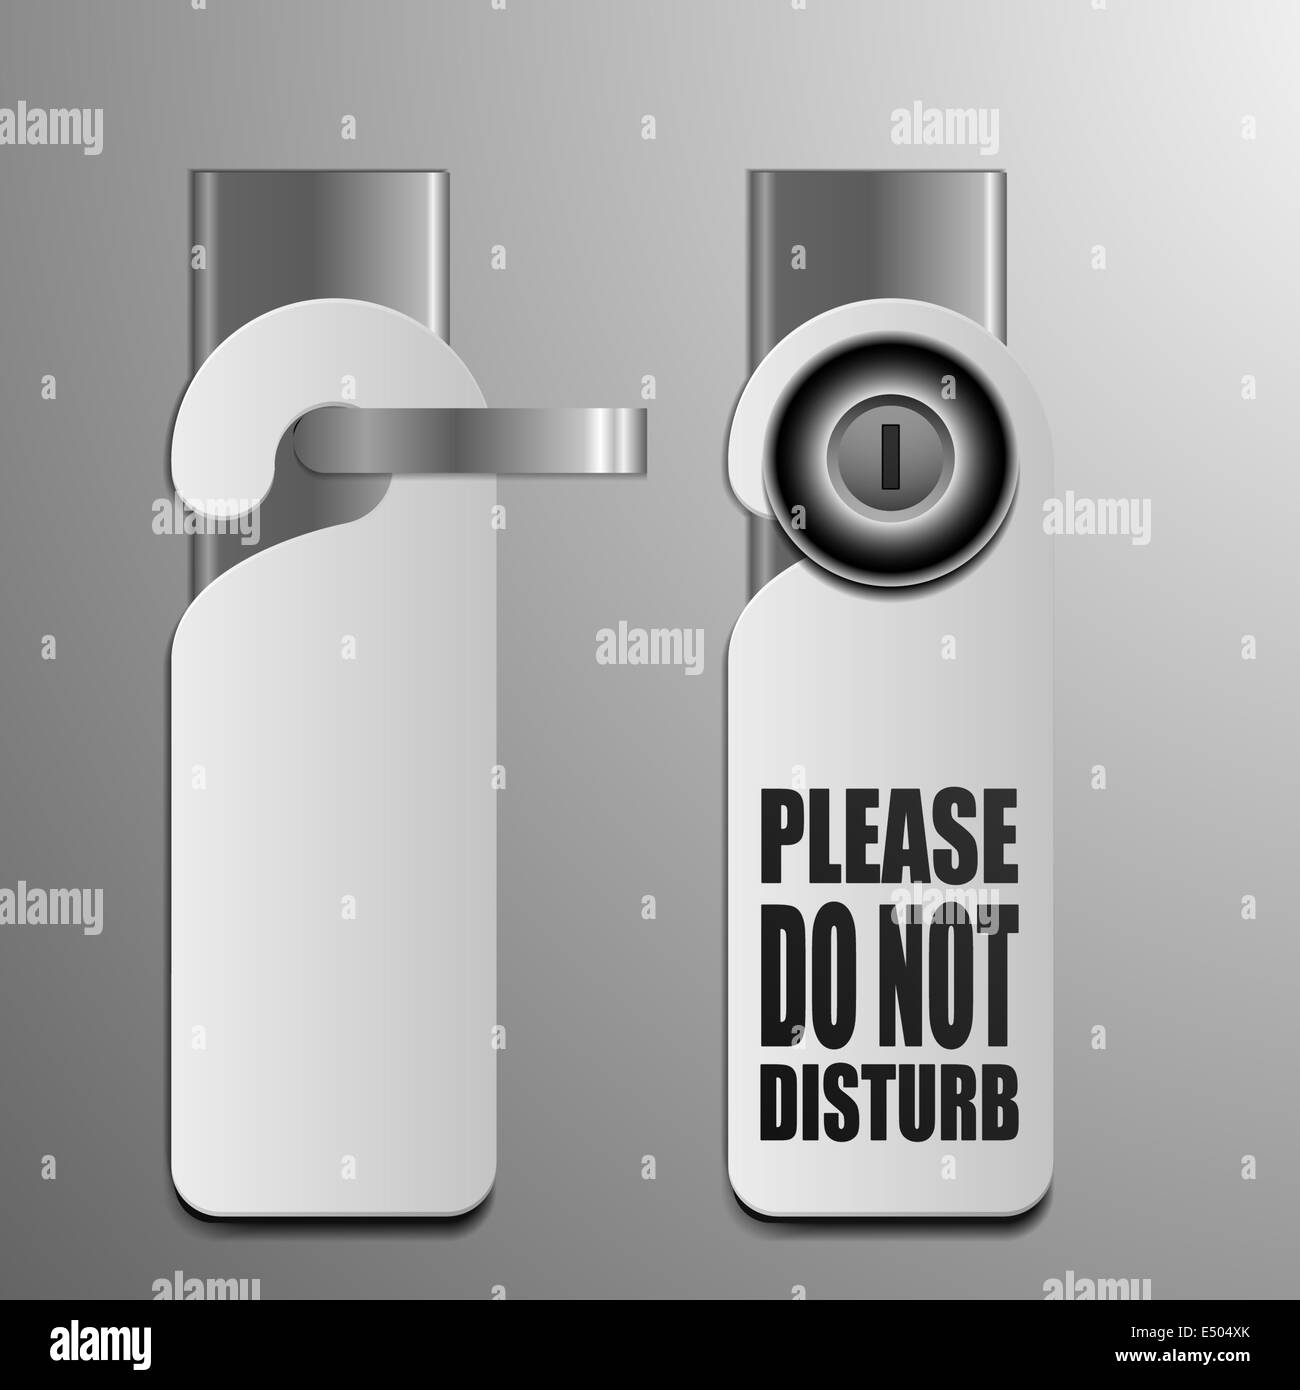 do not disturb door handles Stock Photo